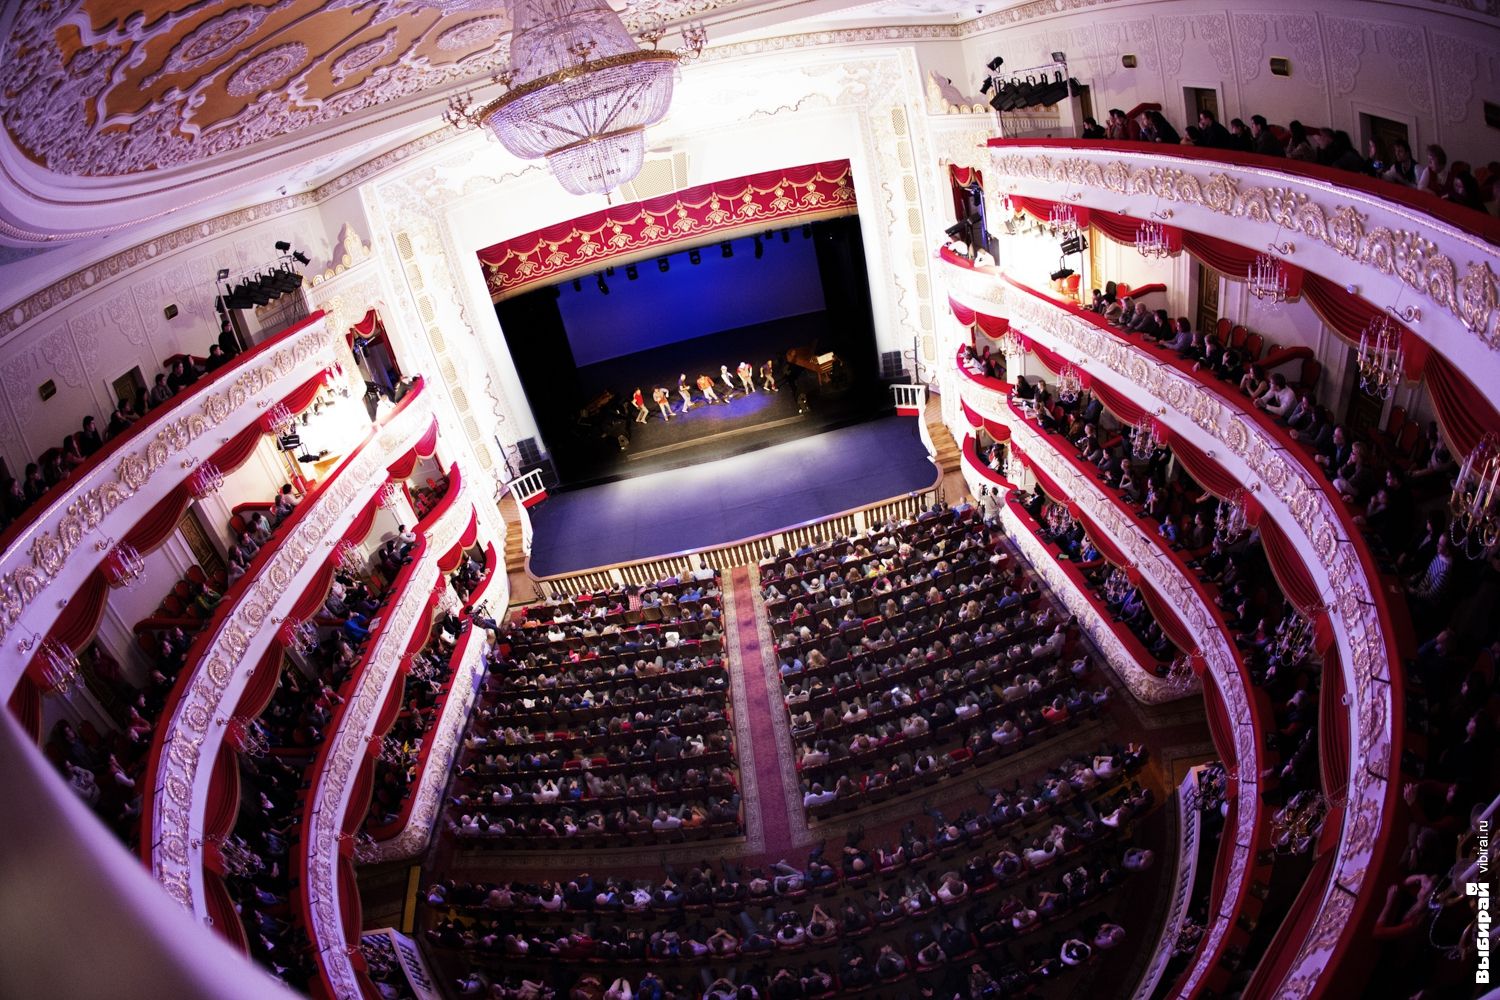 театр оперы и балета внутри фото